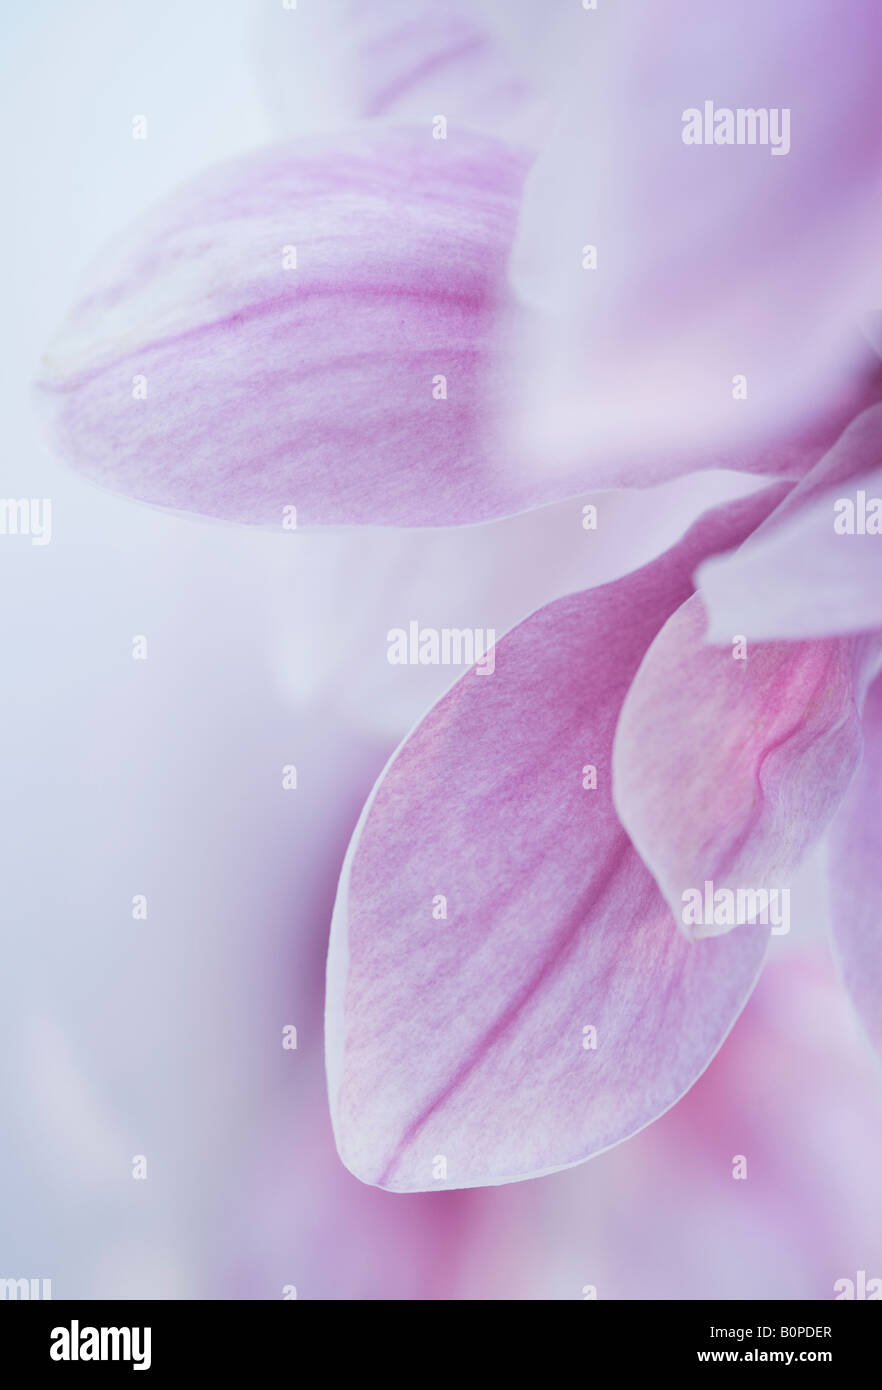 Plan macro sur une fleur de Magnolia tourné à la fin de mars au Royaume-Uni Banque D'Images